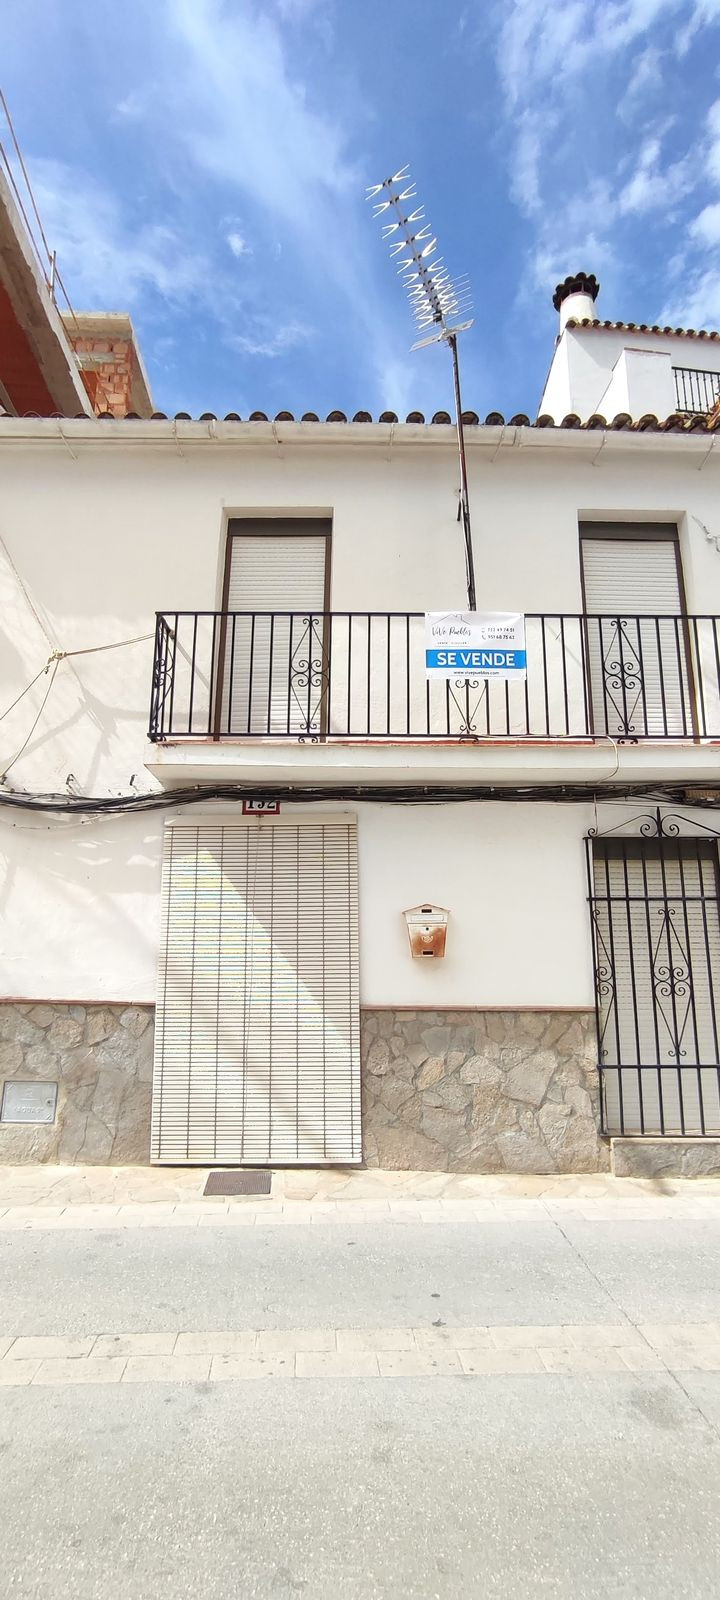 						Maison Jumelée  Semi Individuelle
													en vente 
																			 à Gaucín
					